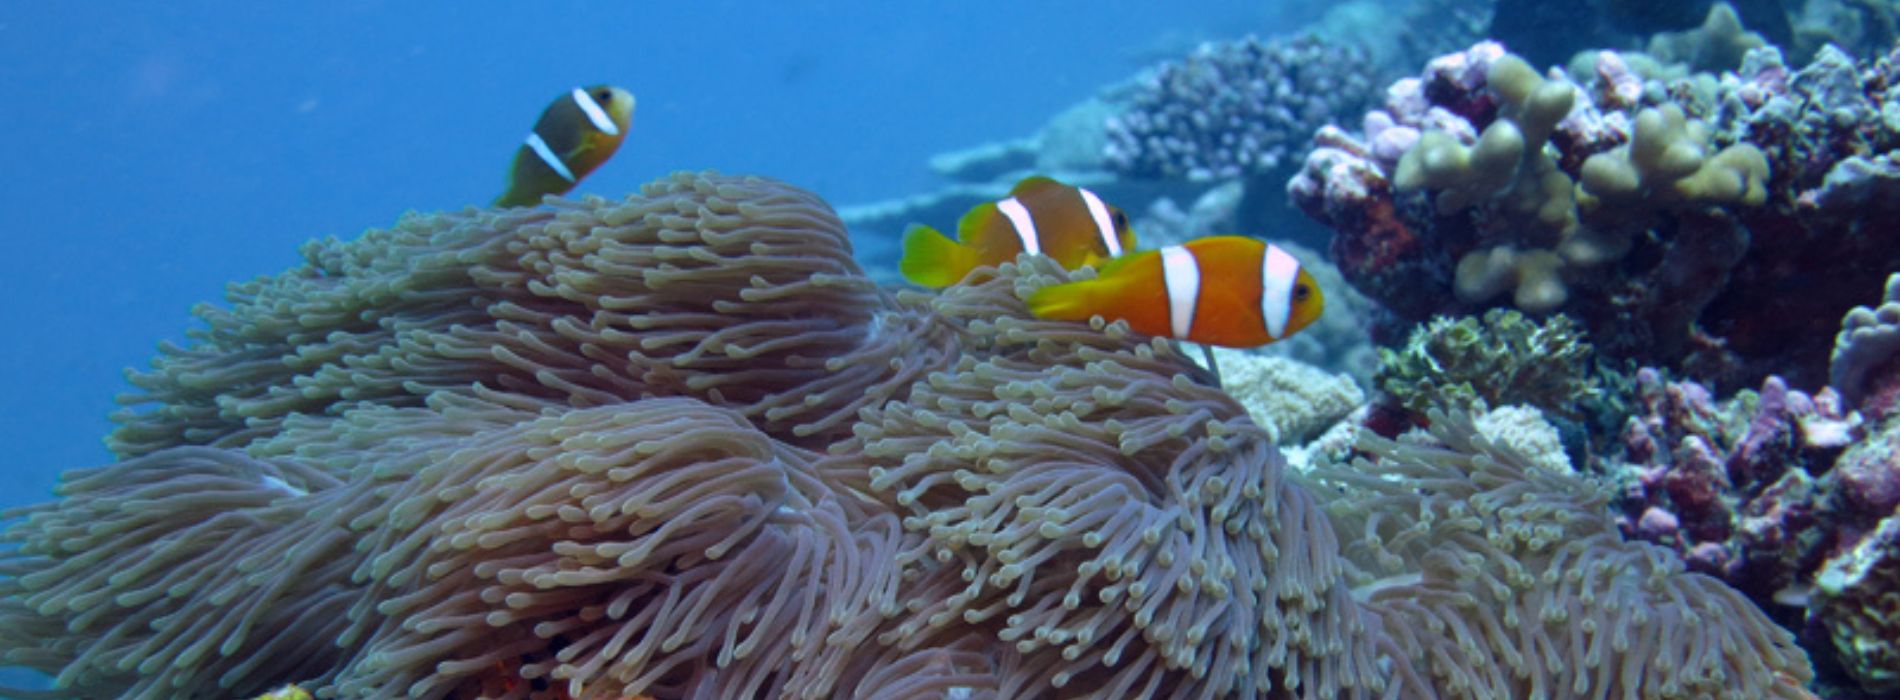 Chagos-anemonefish-family-swimming